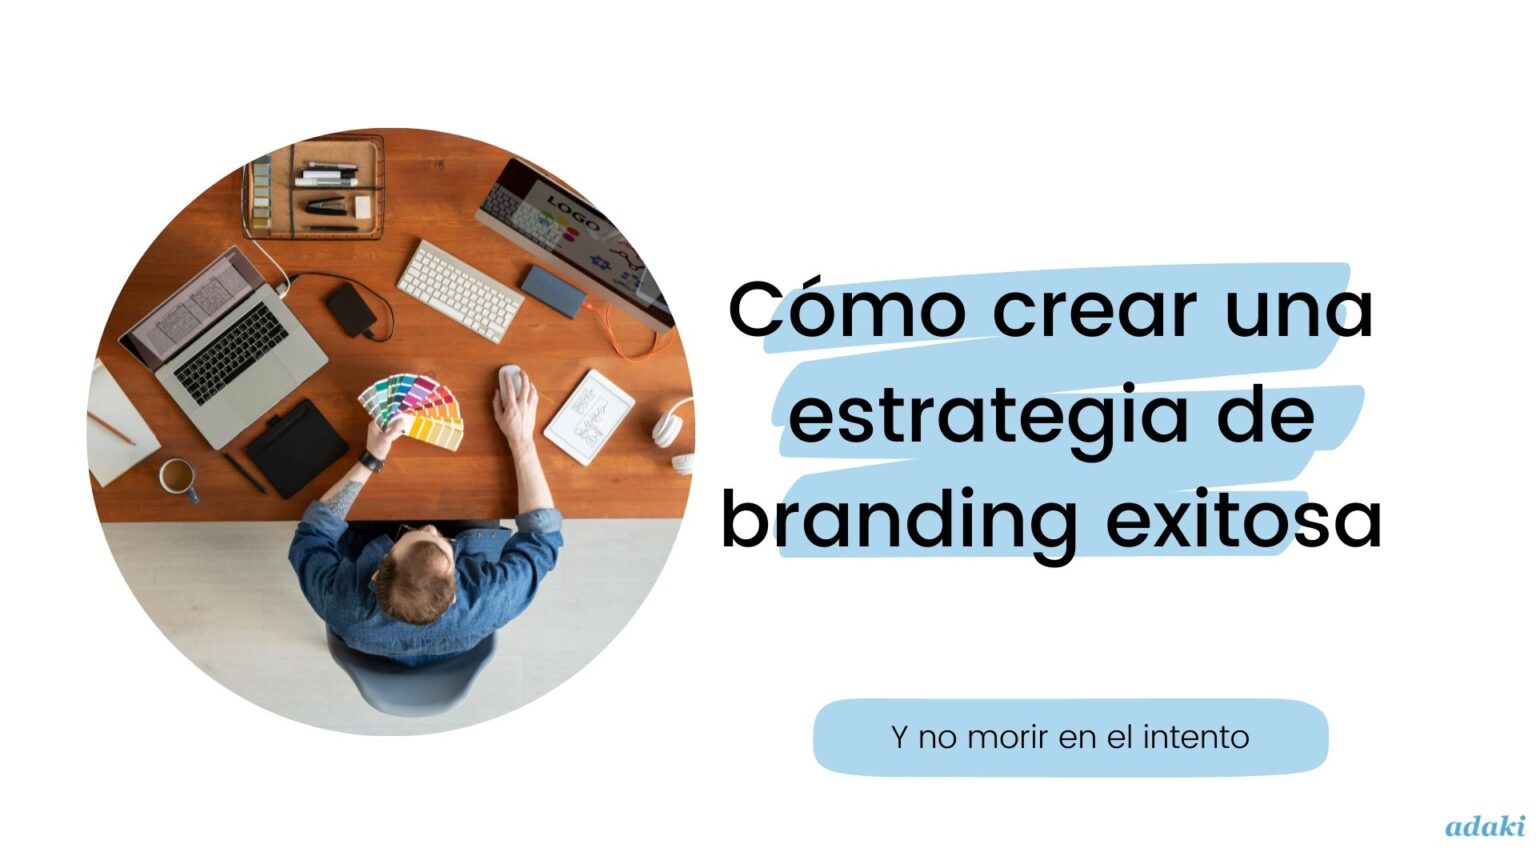 Cómo crear tu estrategia de branding